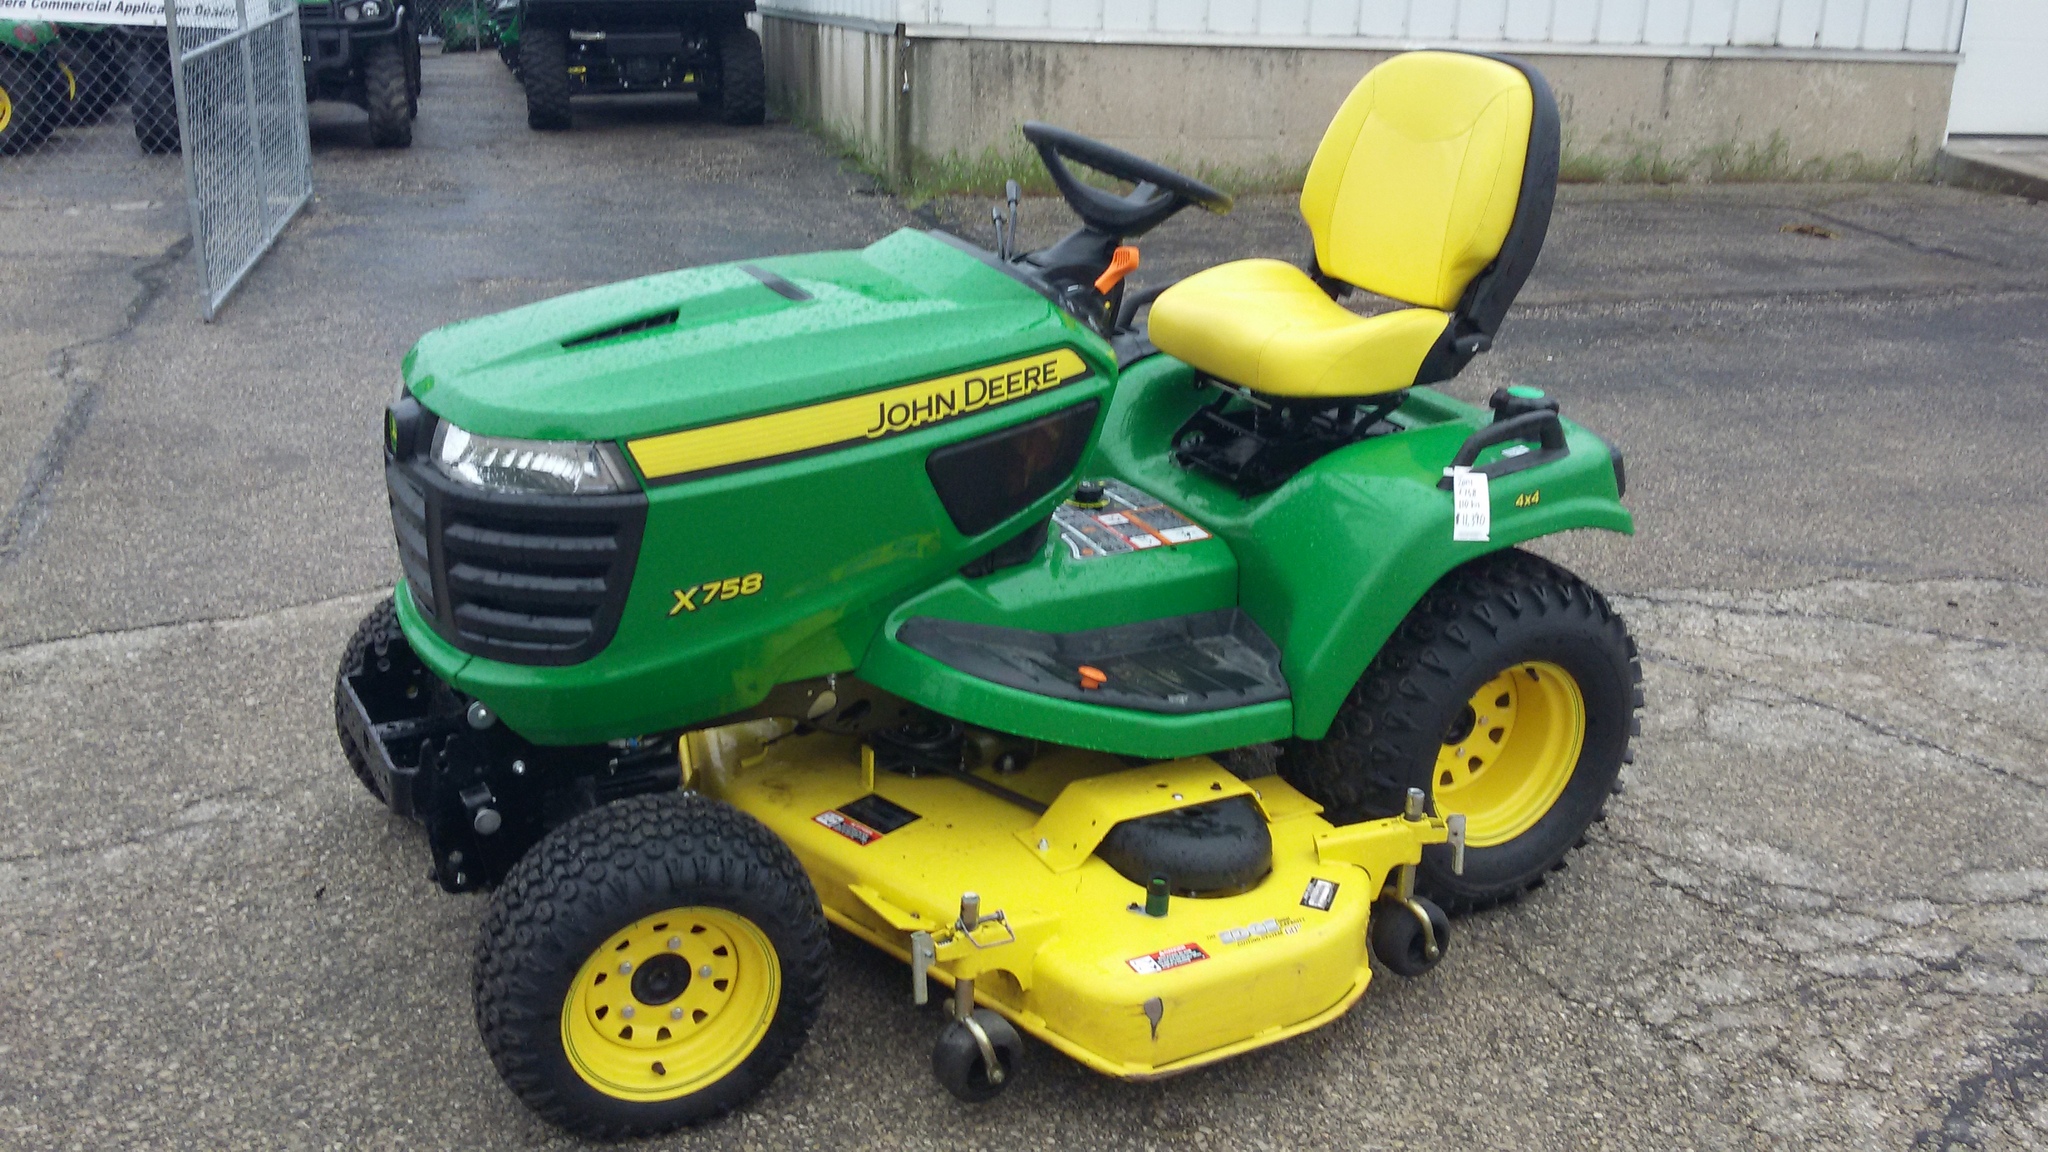 John Deere X758 Lawn & Garden Tractors for Sale | [58865]